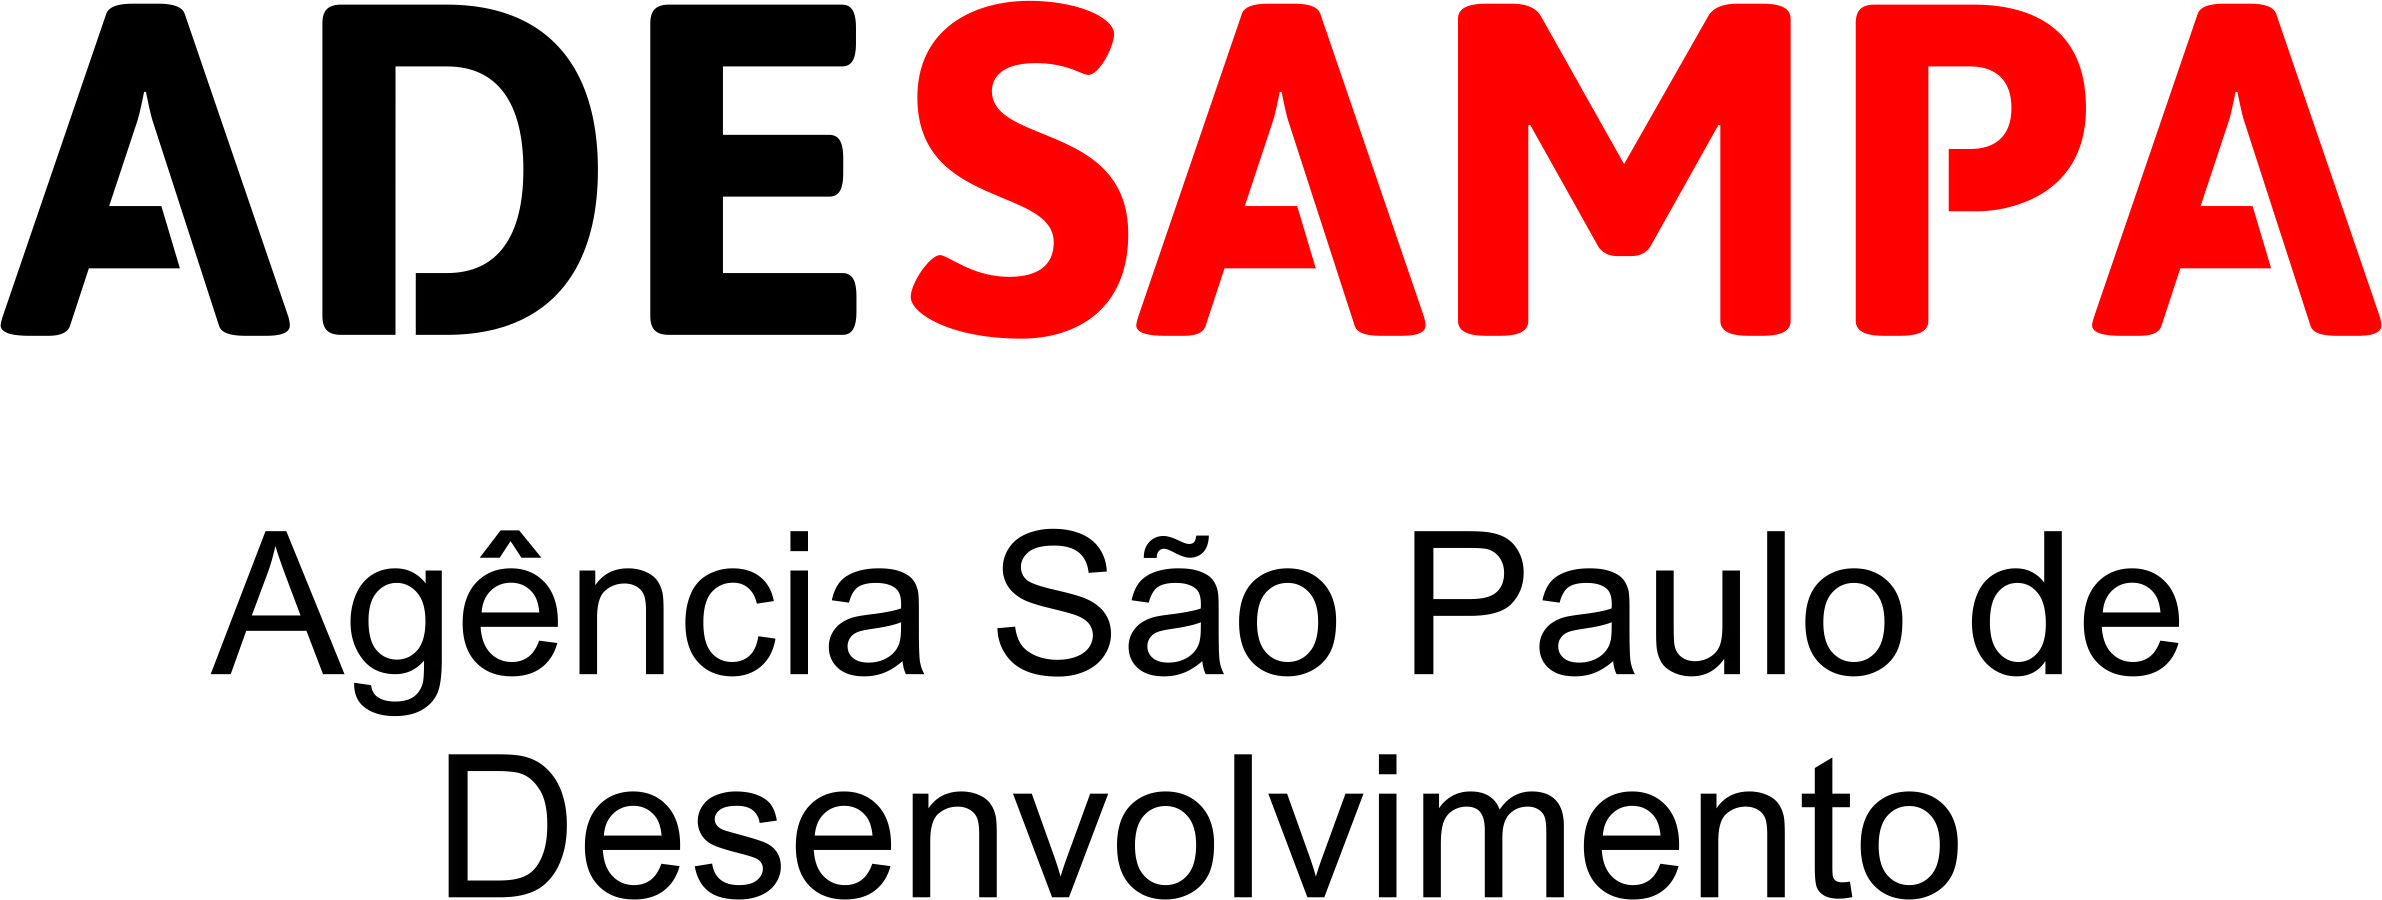 Agencia São Paulo de Desenvolvimento - Ade Sampa